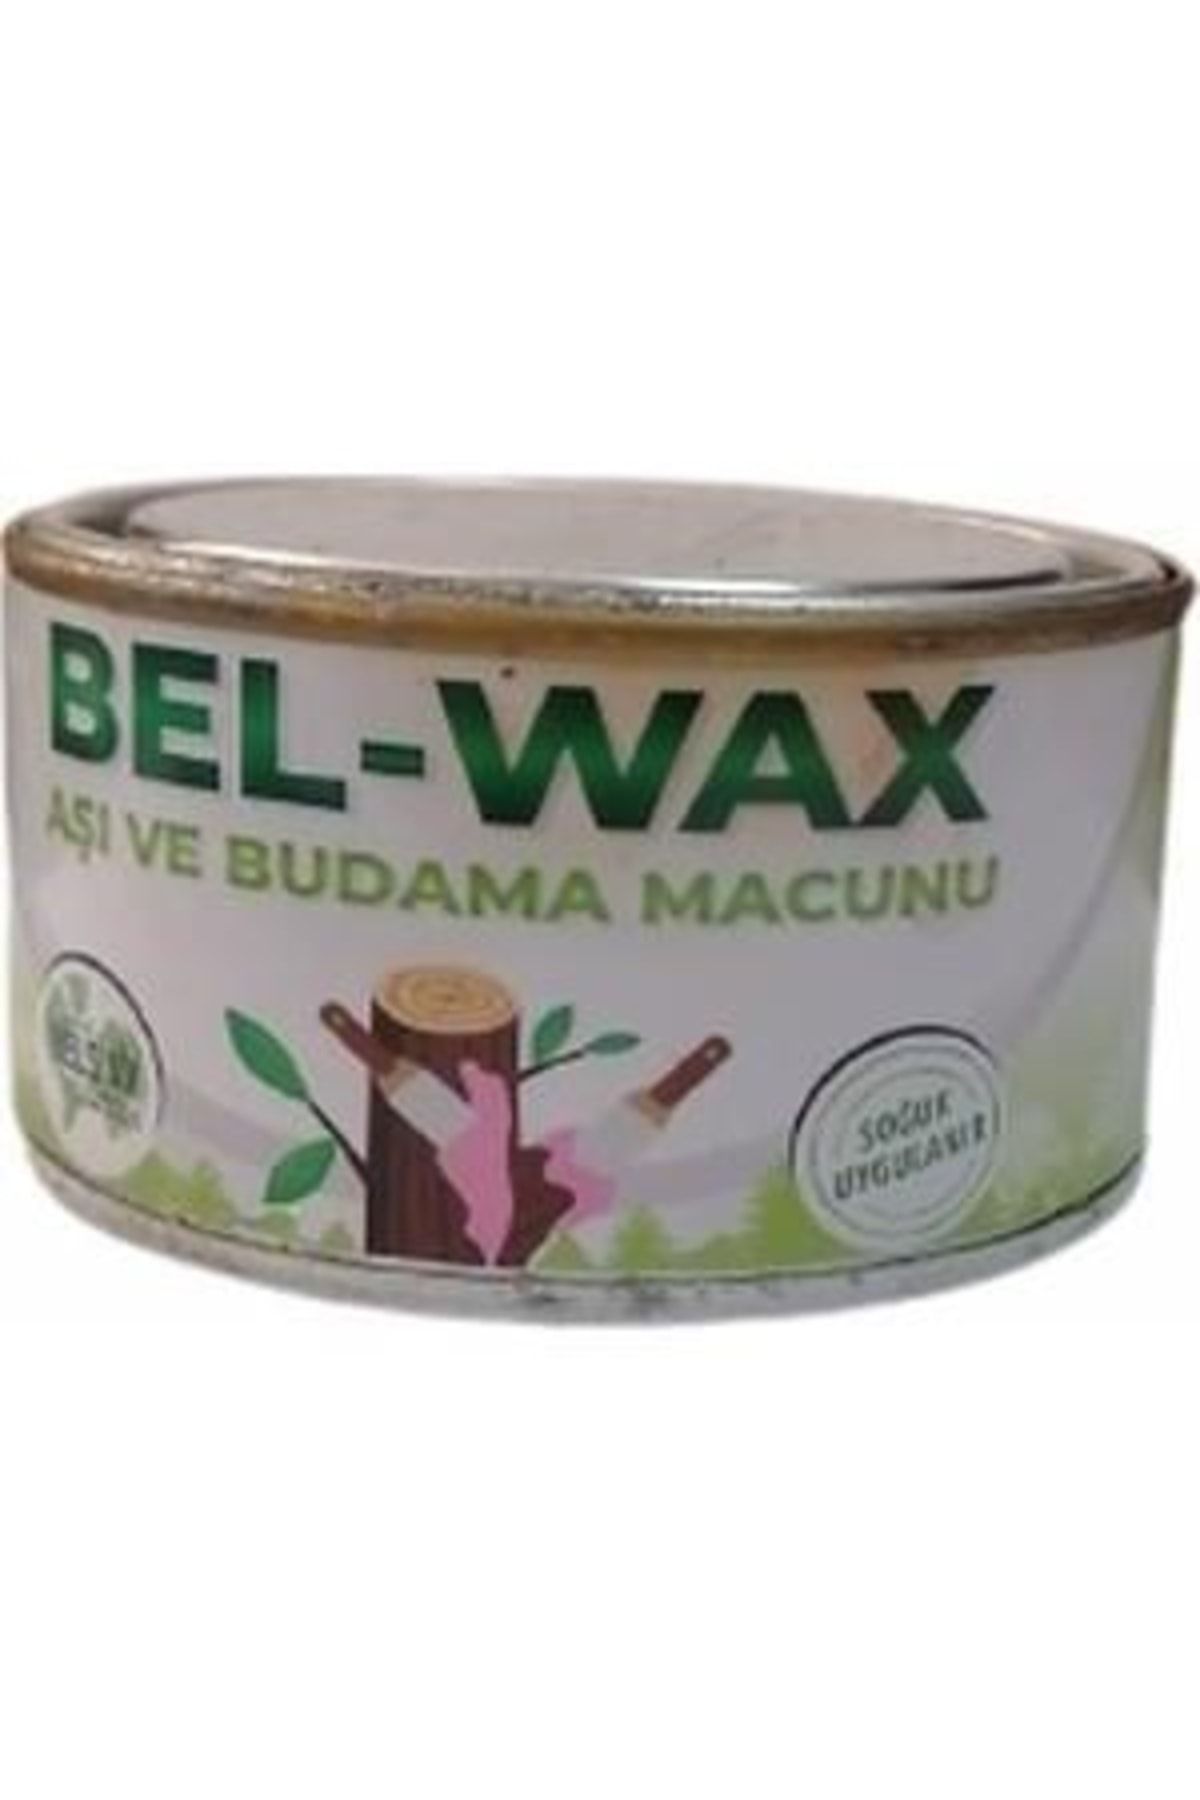 bel wax Bel-wax Aşı Macunu 500 gr